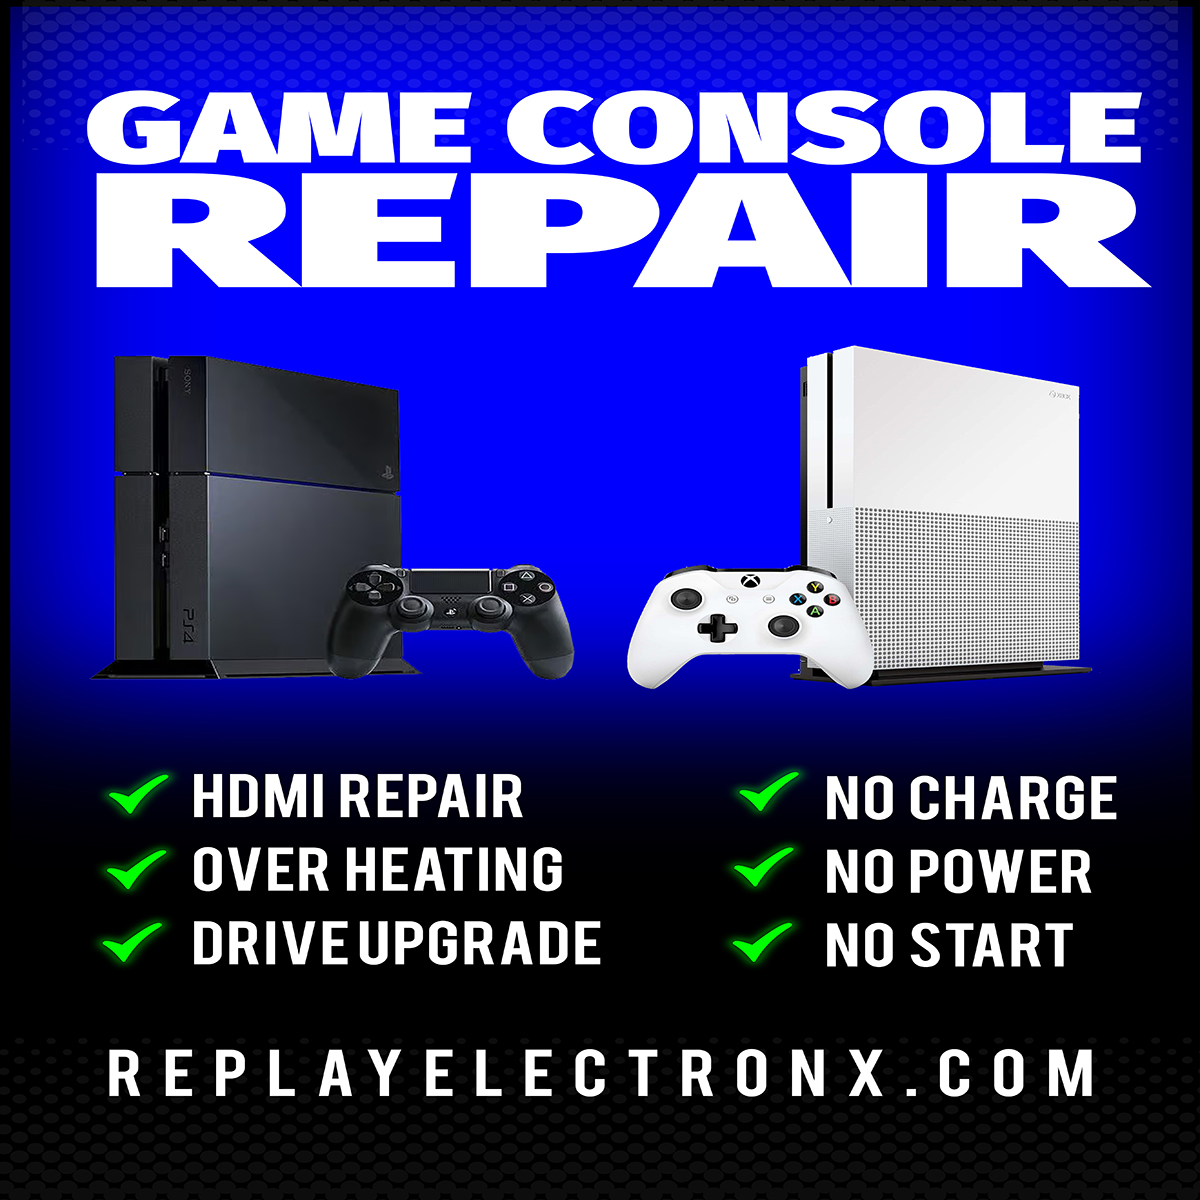 Xbox Repair 

